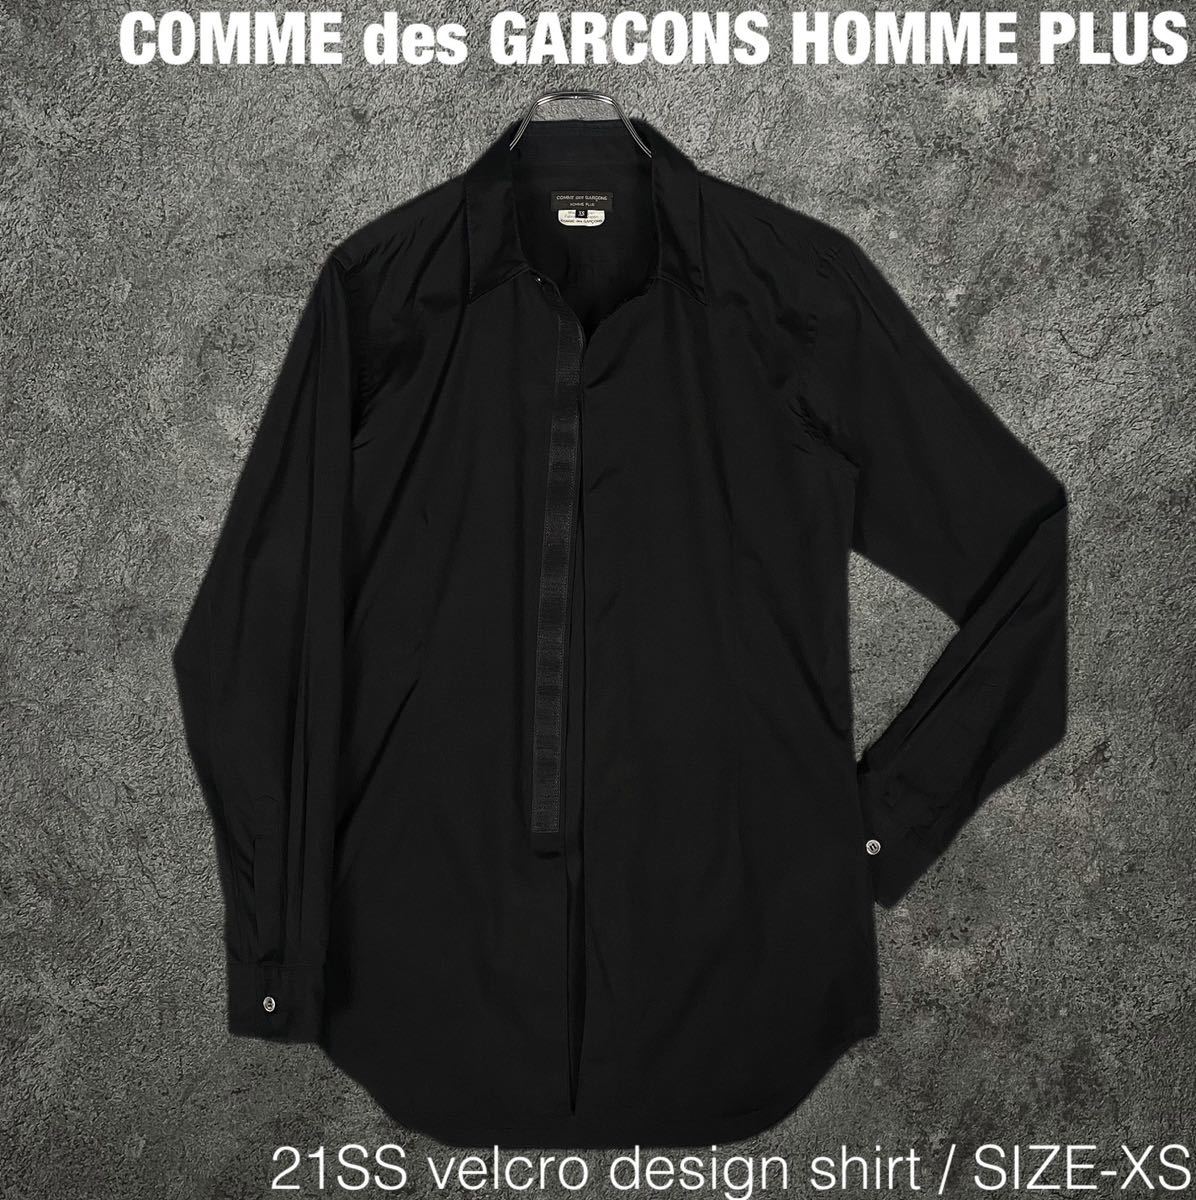 21SS コムデギャルソン オムプリュス ベルクロ 比翼 シャツ COMME des GARCONS HOMME PLUS 長袖シャツ ドレスシャツ